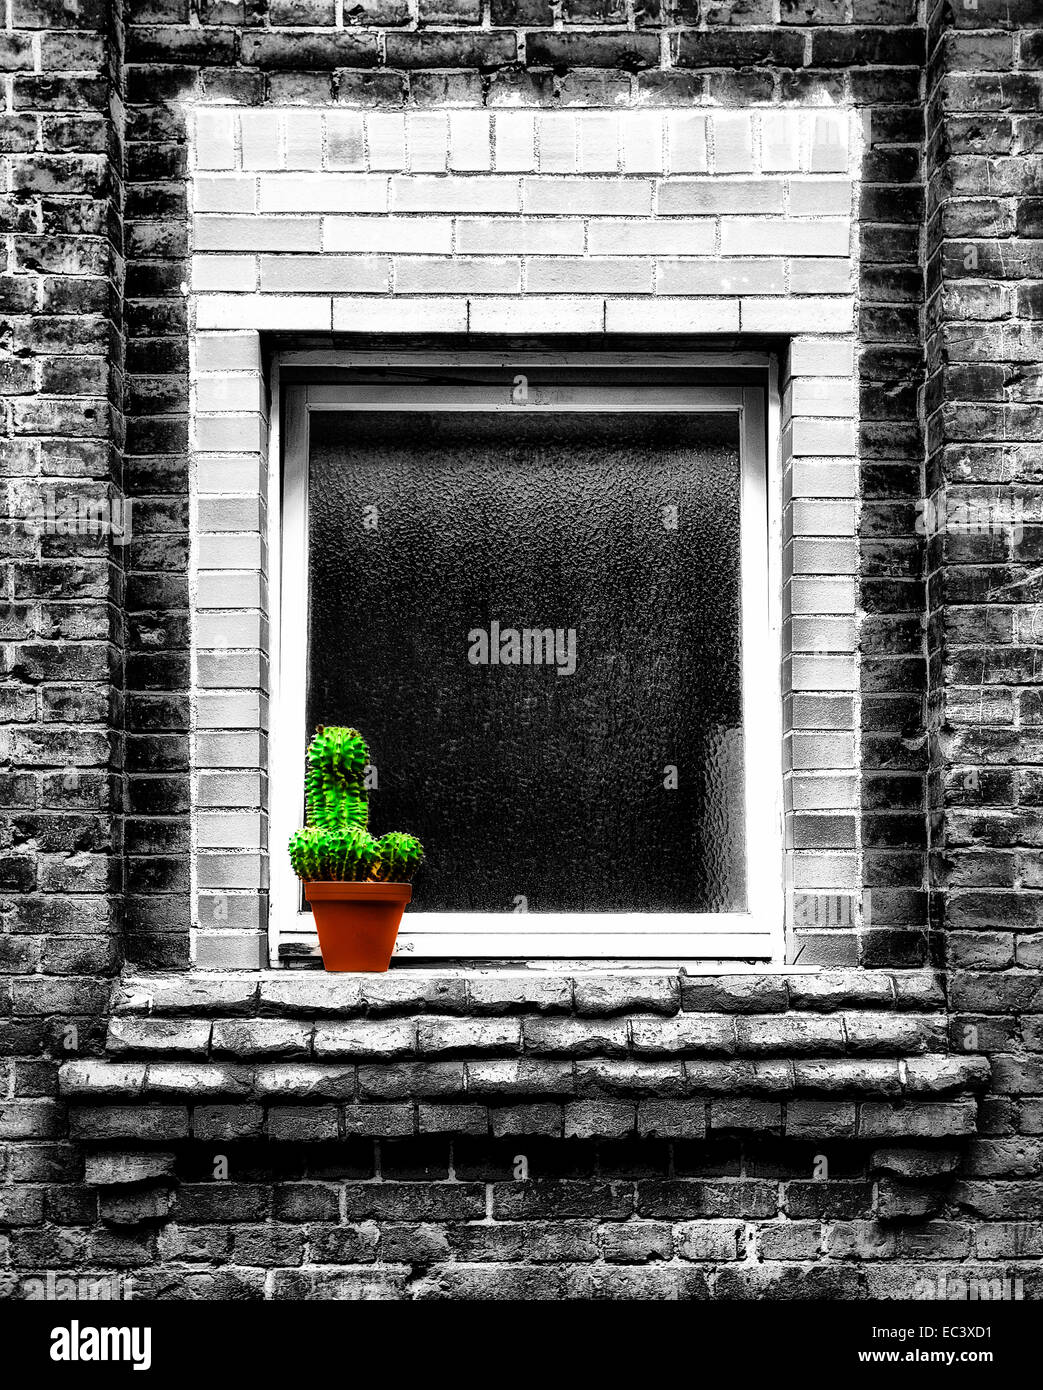 Flower pot with Kaktus Stock Photo